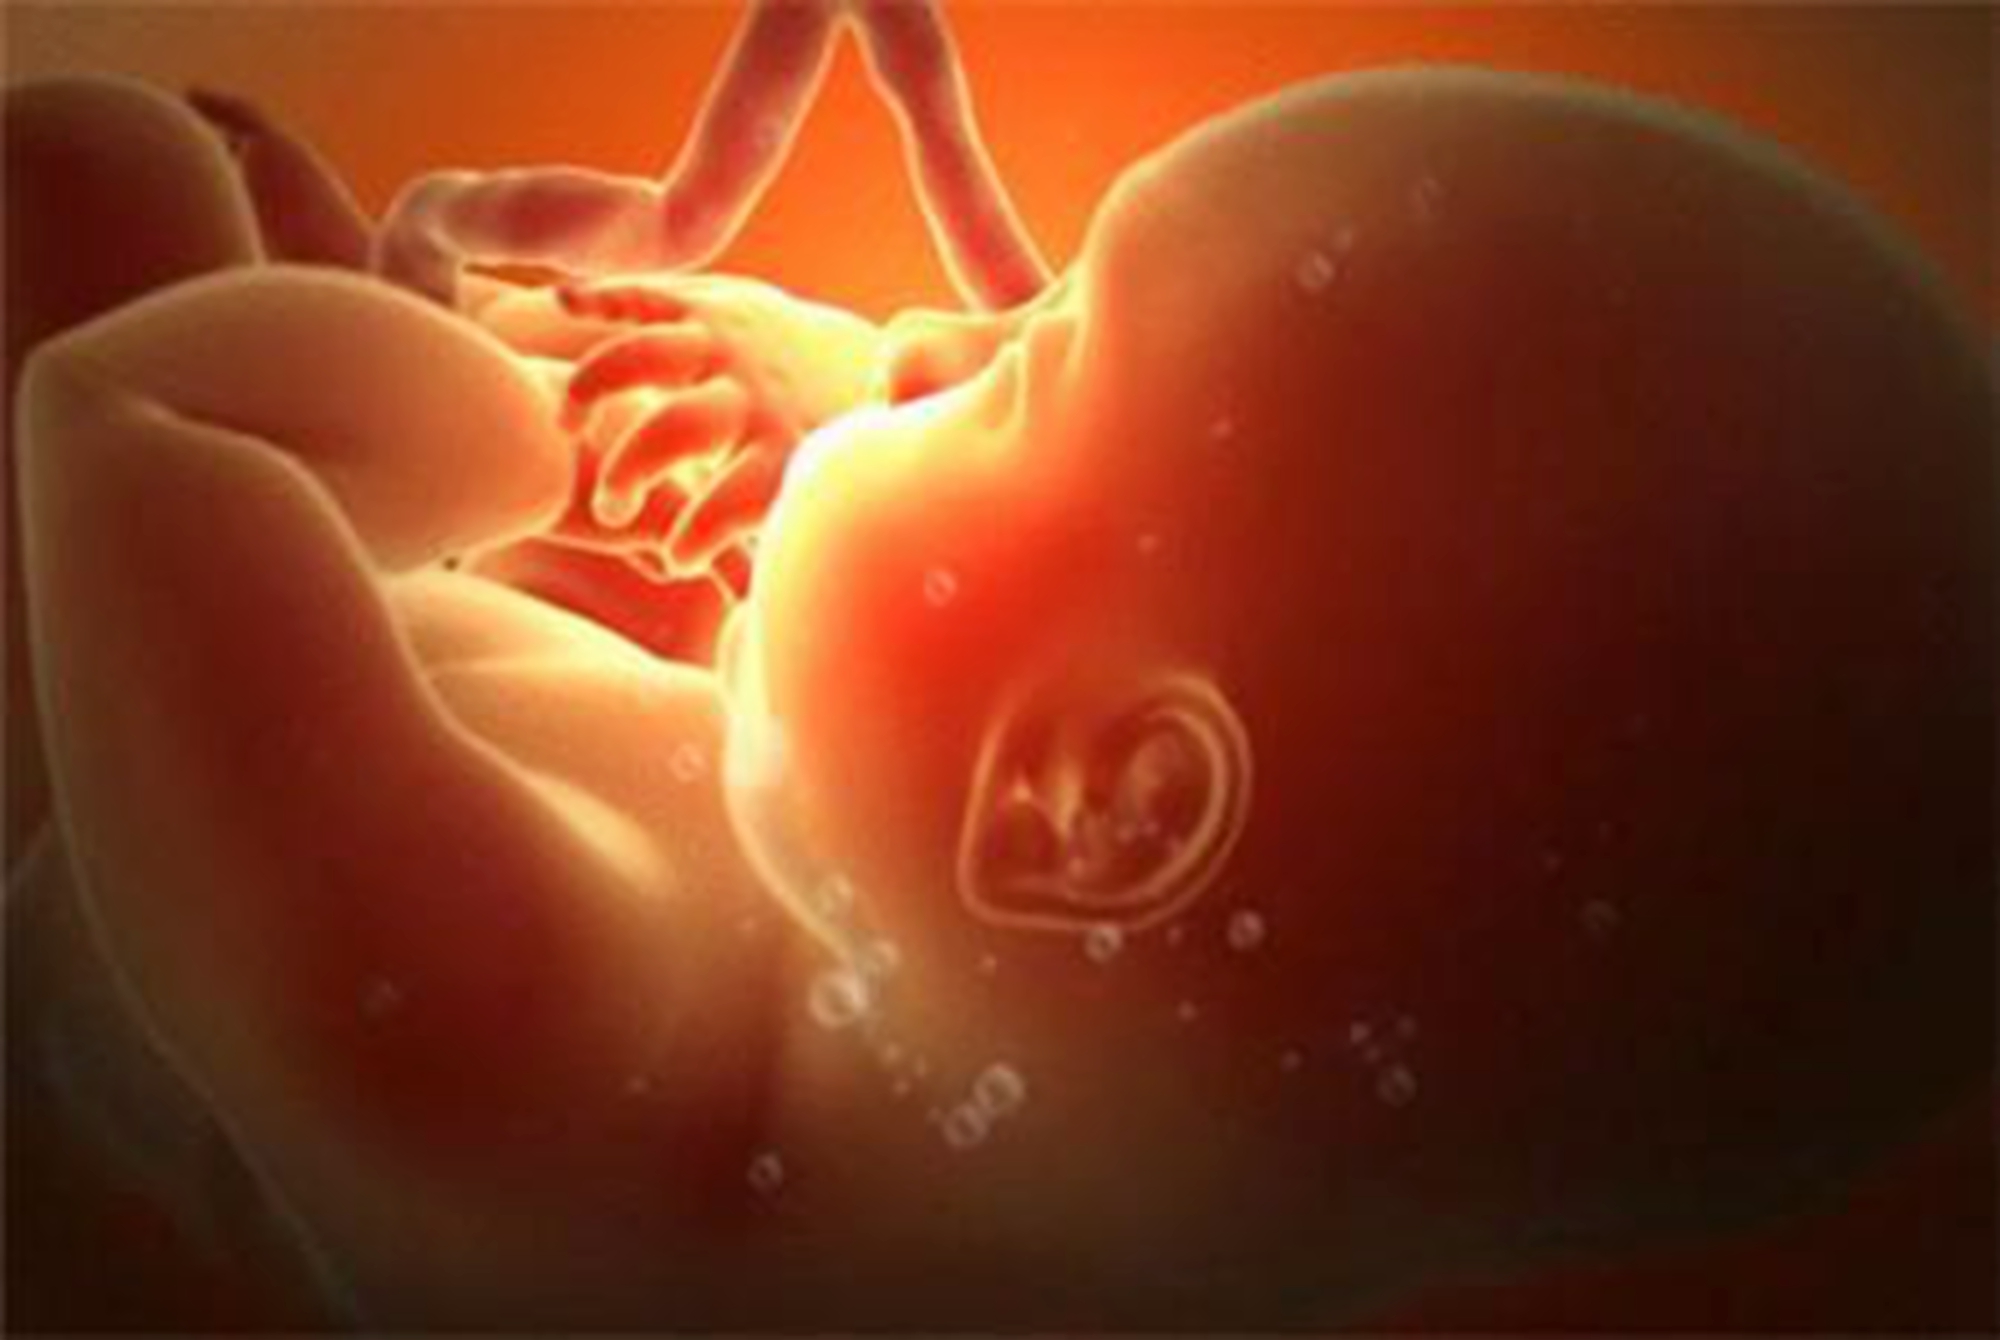 原创胎儿在孕肚中会感到恐惧吗?3d模拟图告诉你,生命的探索已经开始